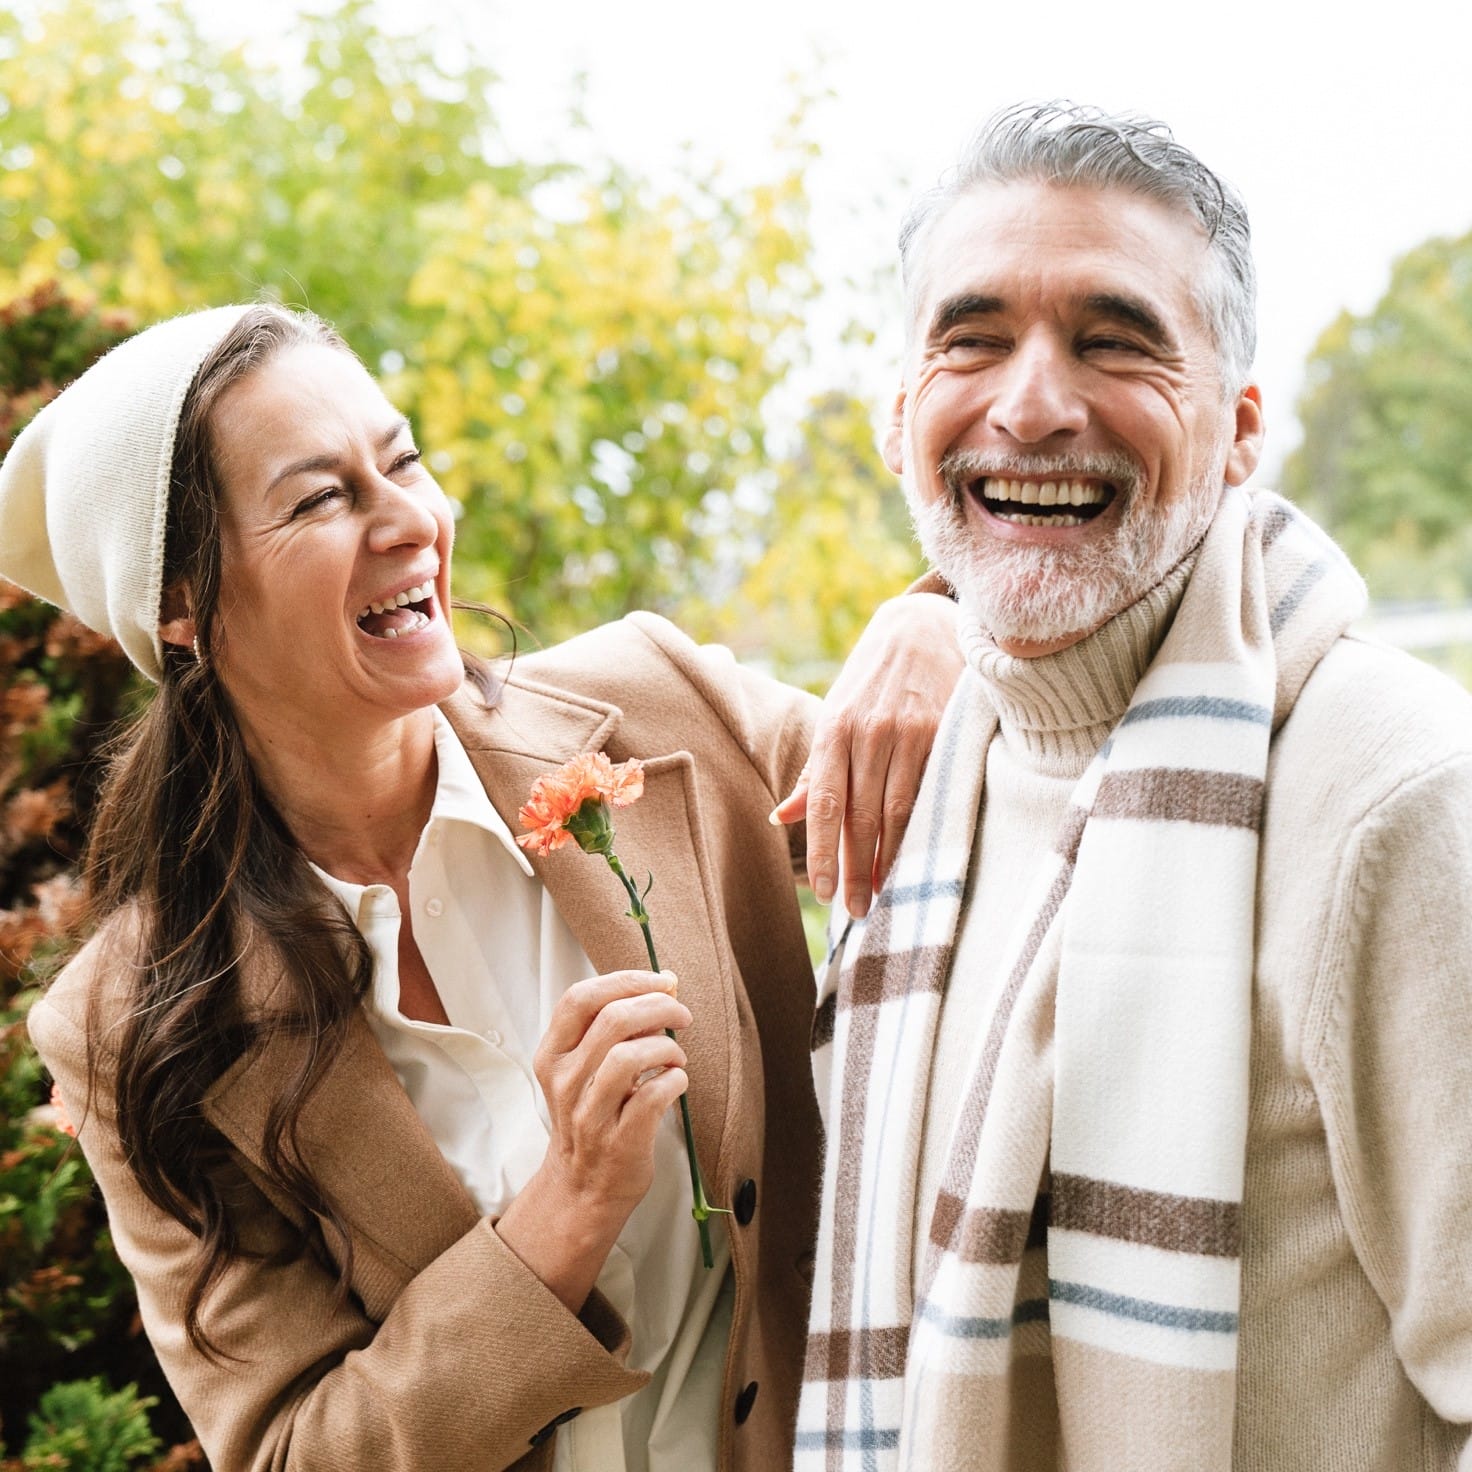 Et ældre par fejrer deres bryllupsdag med store smil. Kvinden holder en orange nellike i hånden, og manden har en stribet halstørklæde og en beige sweater på. De står tæt sammen og deler et øjeblik af glæde og latter i en smuk, grøn park på deres bryllupsdag.